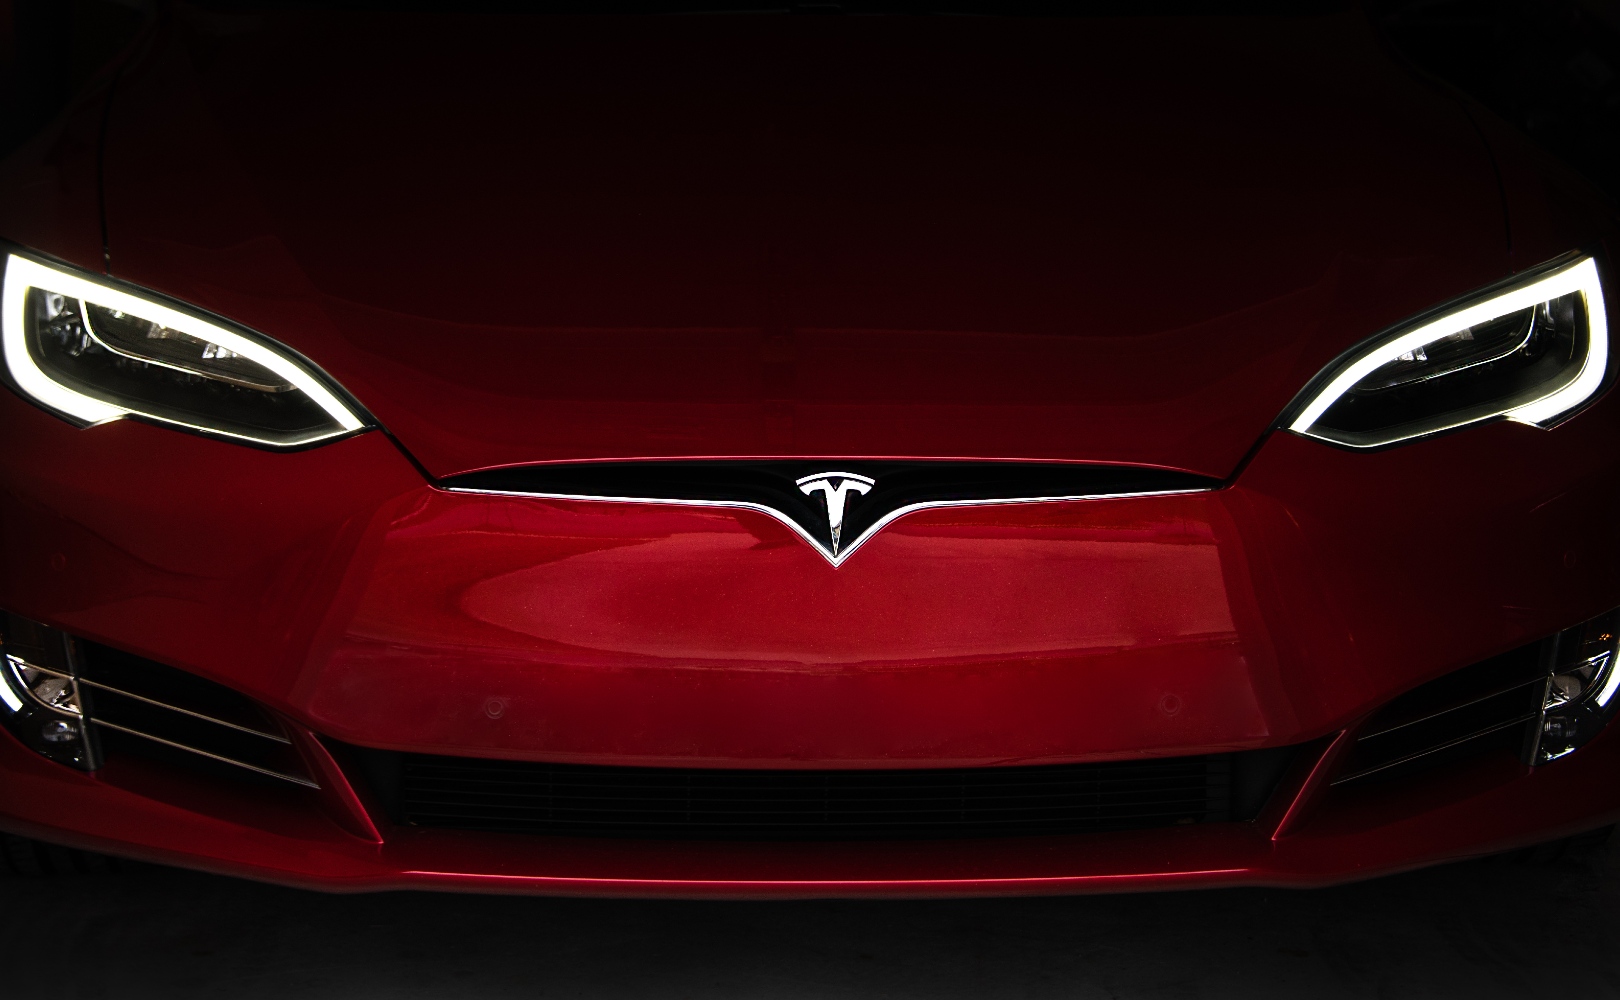 Tesla Model S i aż 1200 km zasięgu na jednym ładowaniu. Jak to możliwe?